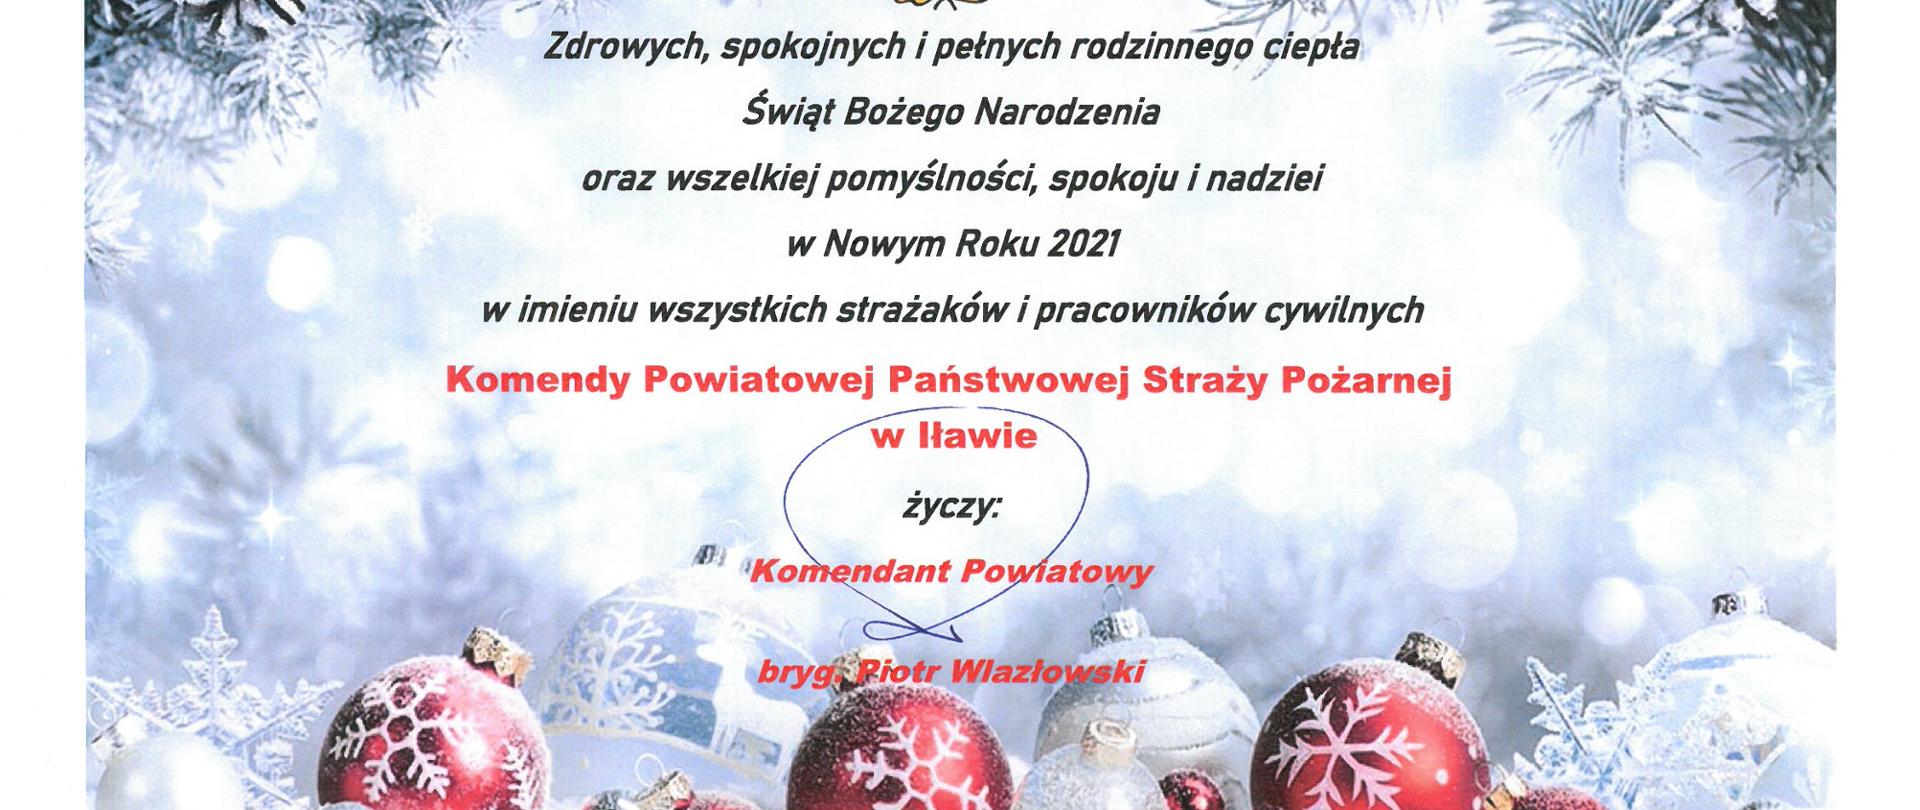 Życzenia świąteczne Komendanta Powiatowego Państwowej Straży Pożarnej w Iławie